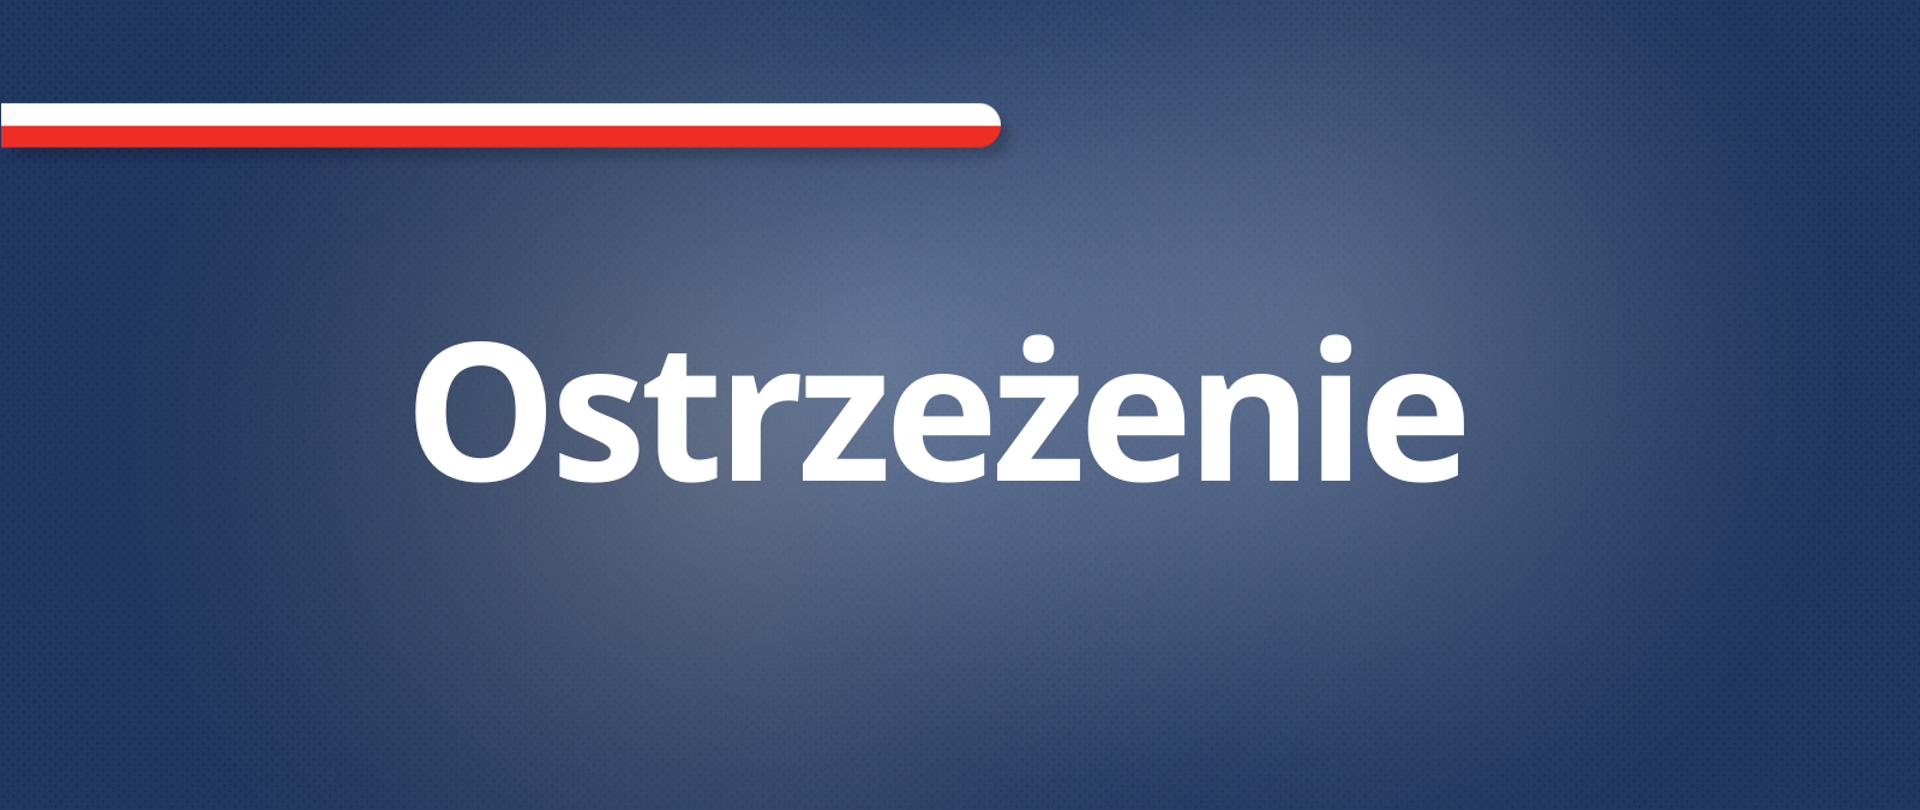 Napis "Ostrzeżenie" na ciemnym granatowym tle z flaga Polski